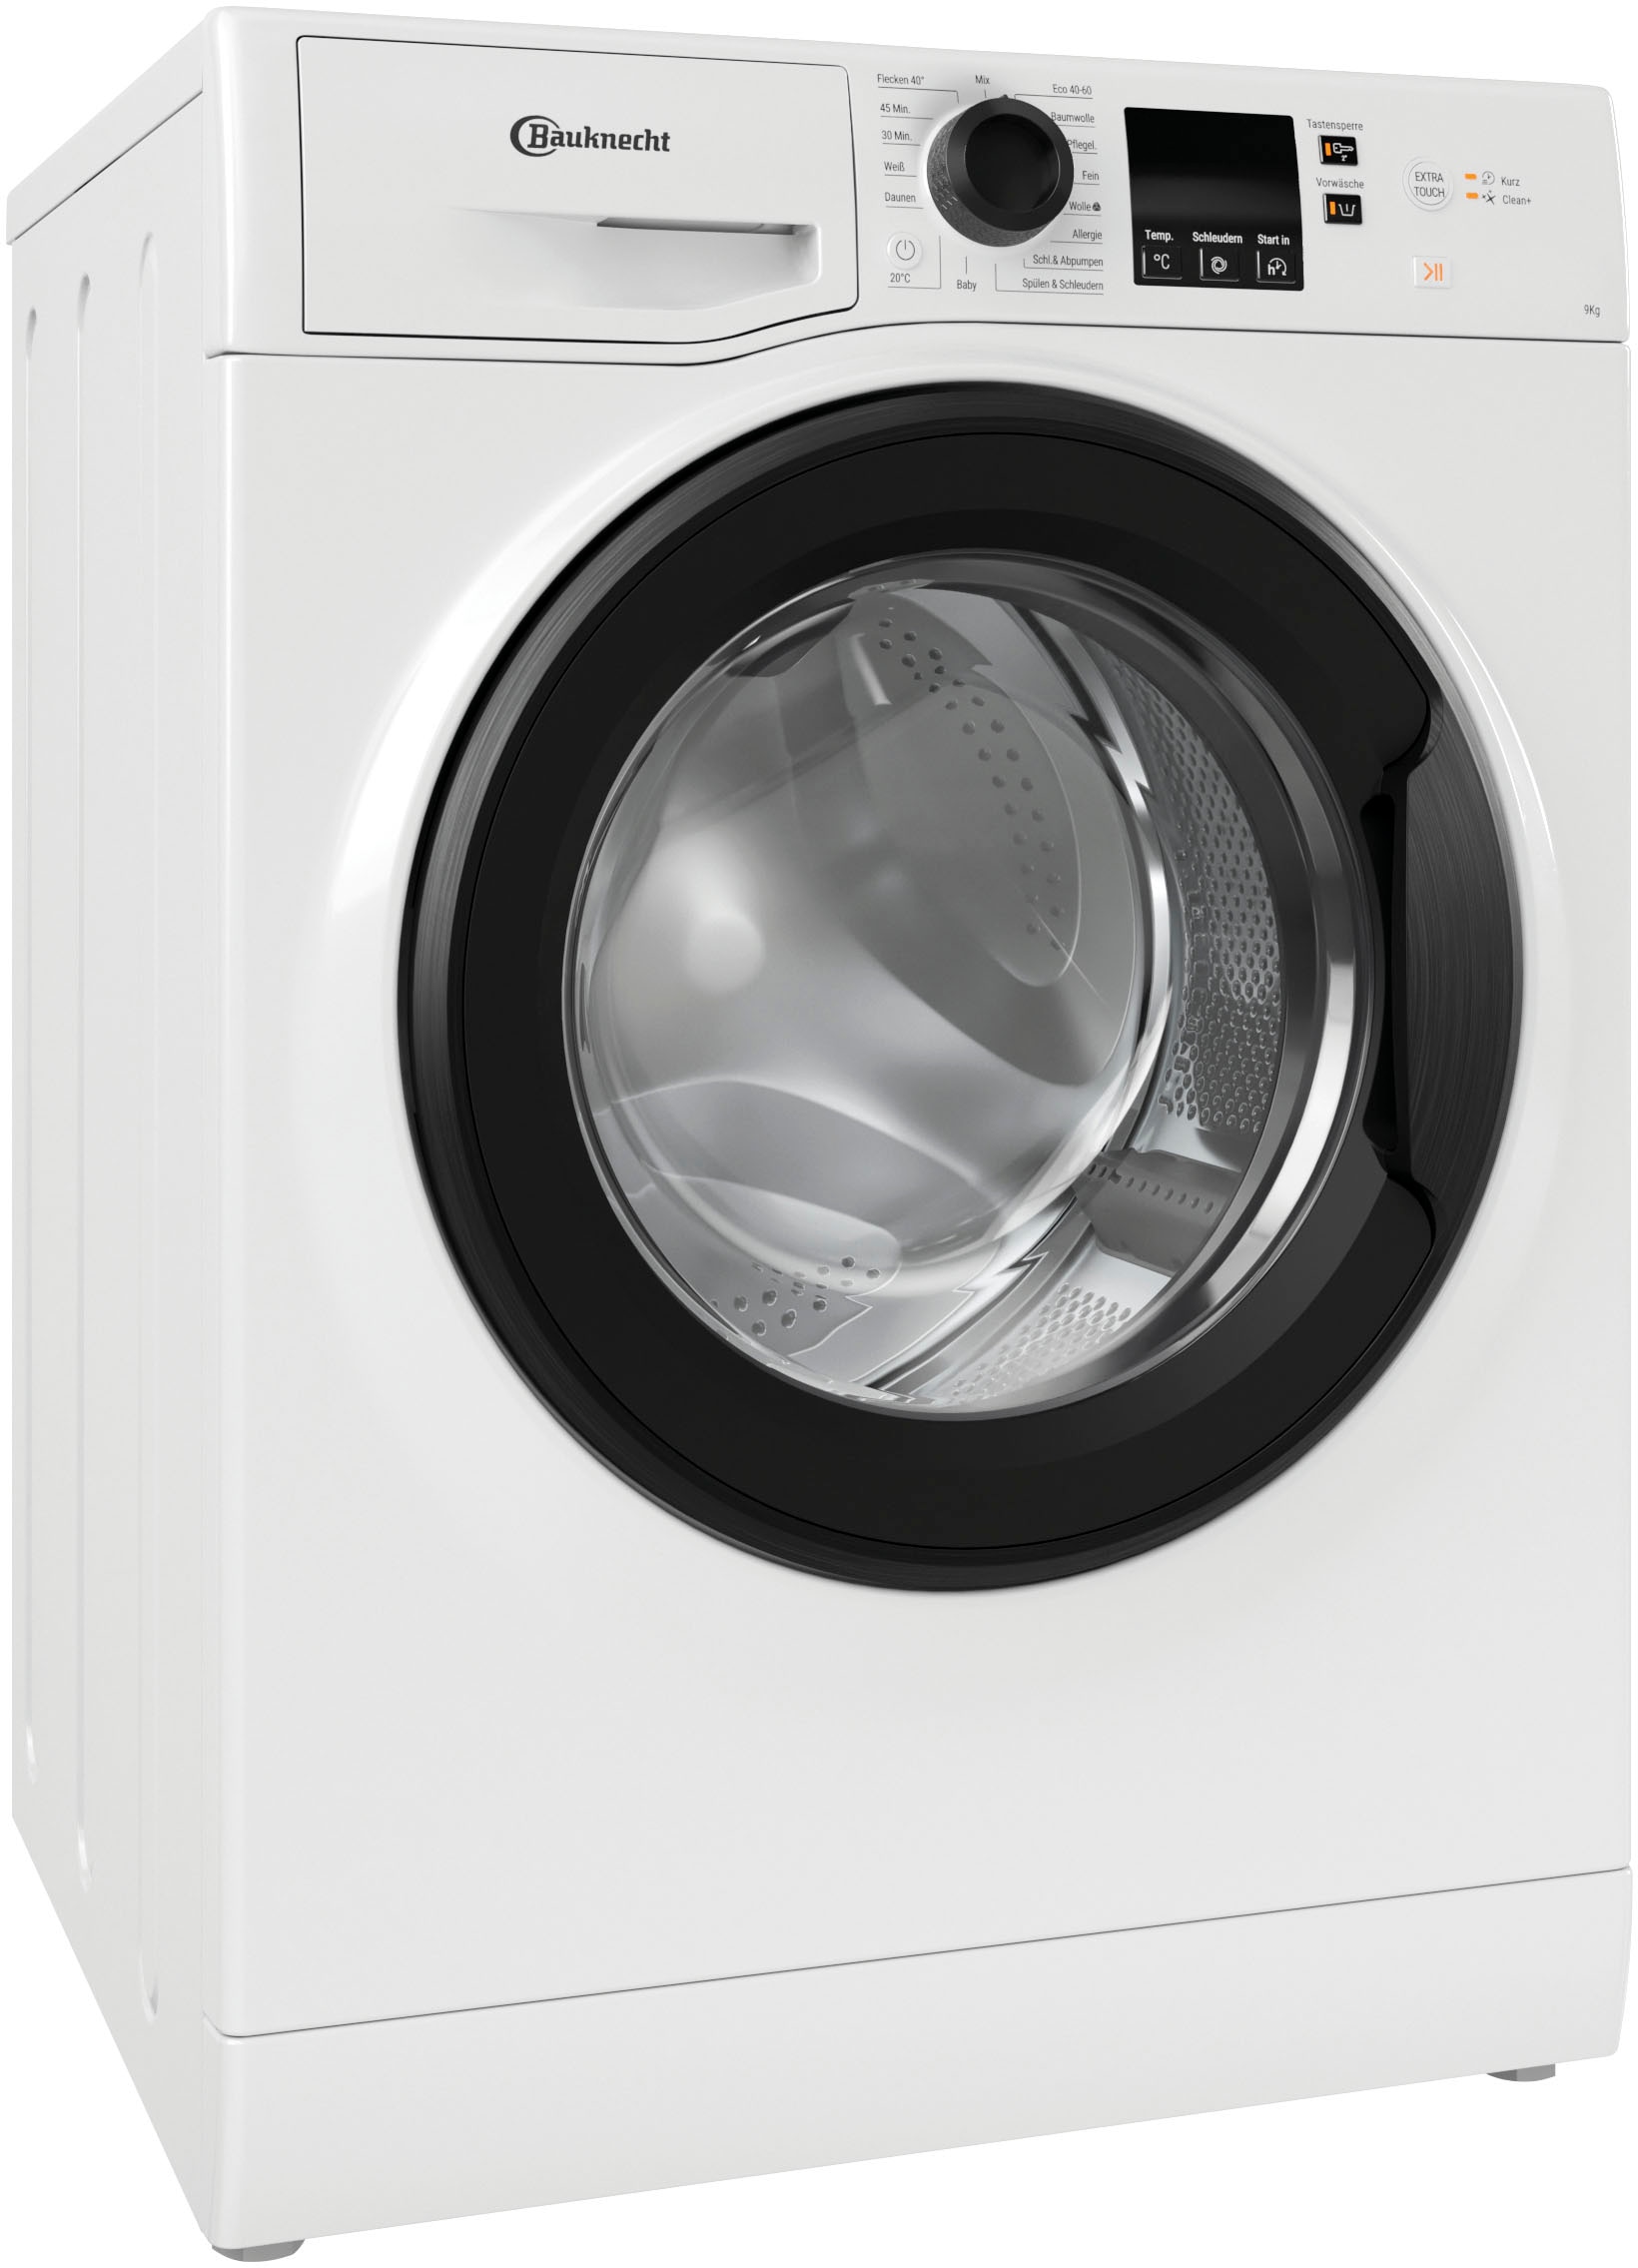 BAUKNECHT Waschmaschine »BPW 1400 9 Garantie 914 XXL BPW U/min Jahren 3 A, A«, 914 kg, mit